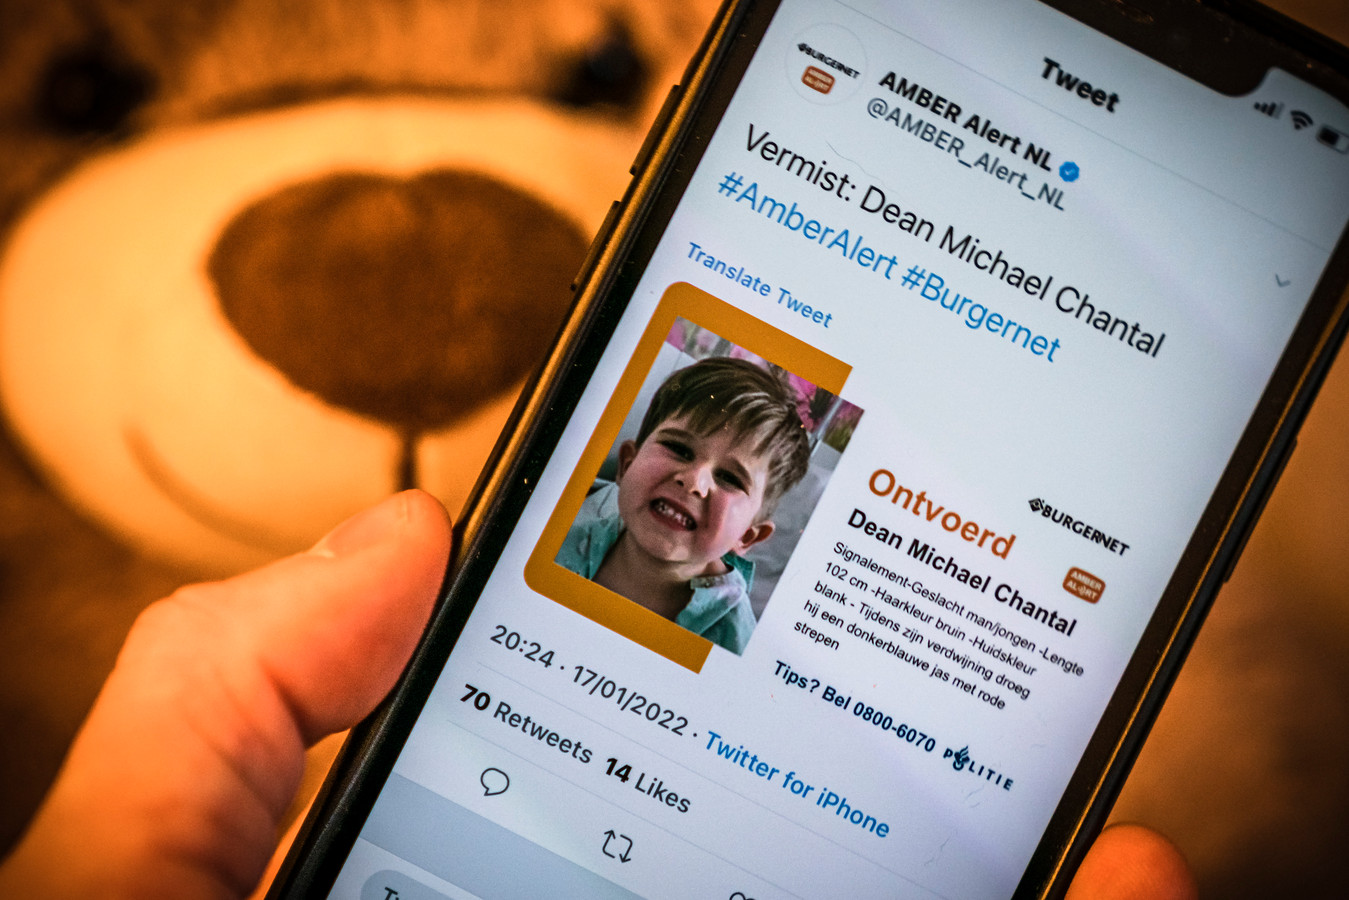 Een mobiele telefoon met het Amber Alert voor de vermiste 4-jarige Dean Michael Chantal uit België. De kleuter werd meegenomen door een 34-jarige man die inmiddels is gearresteerd in Meerkerk.